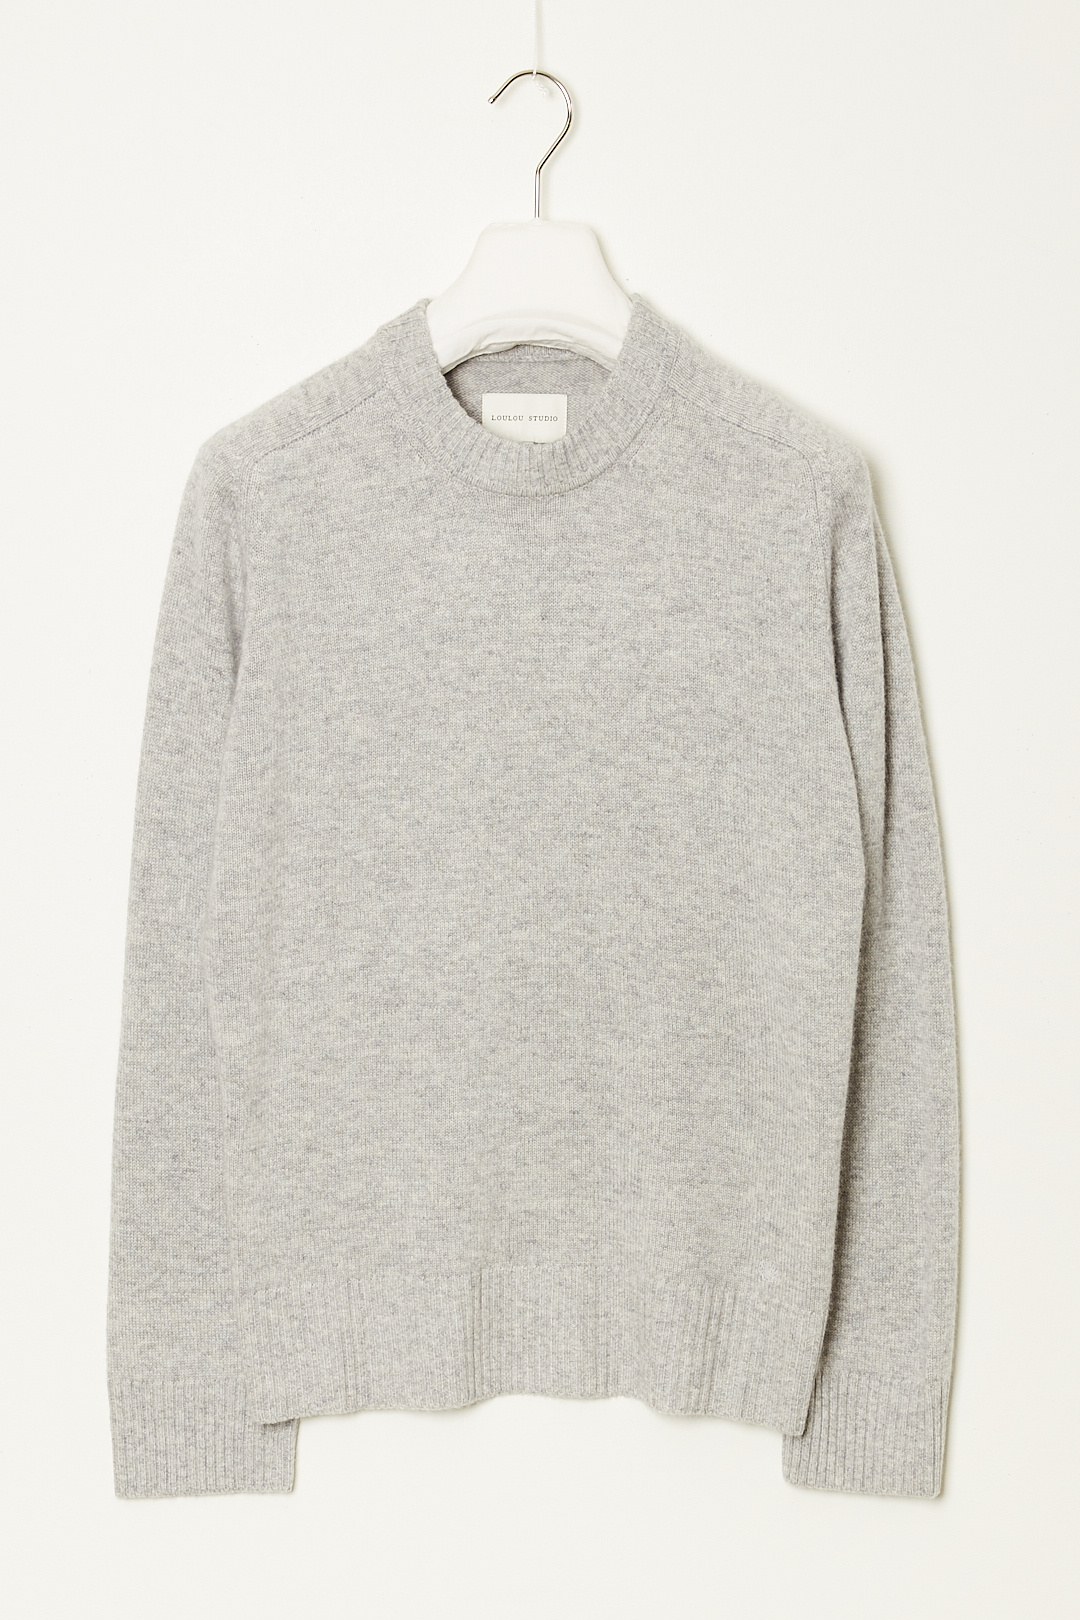 Loulou studio - Baltra cashmere sweater